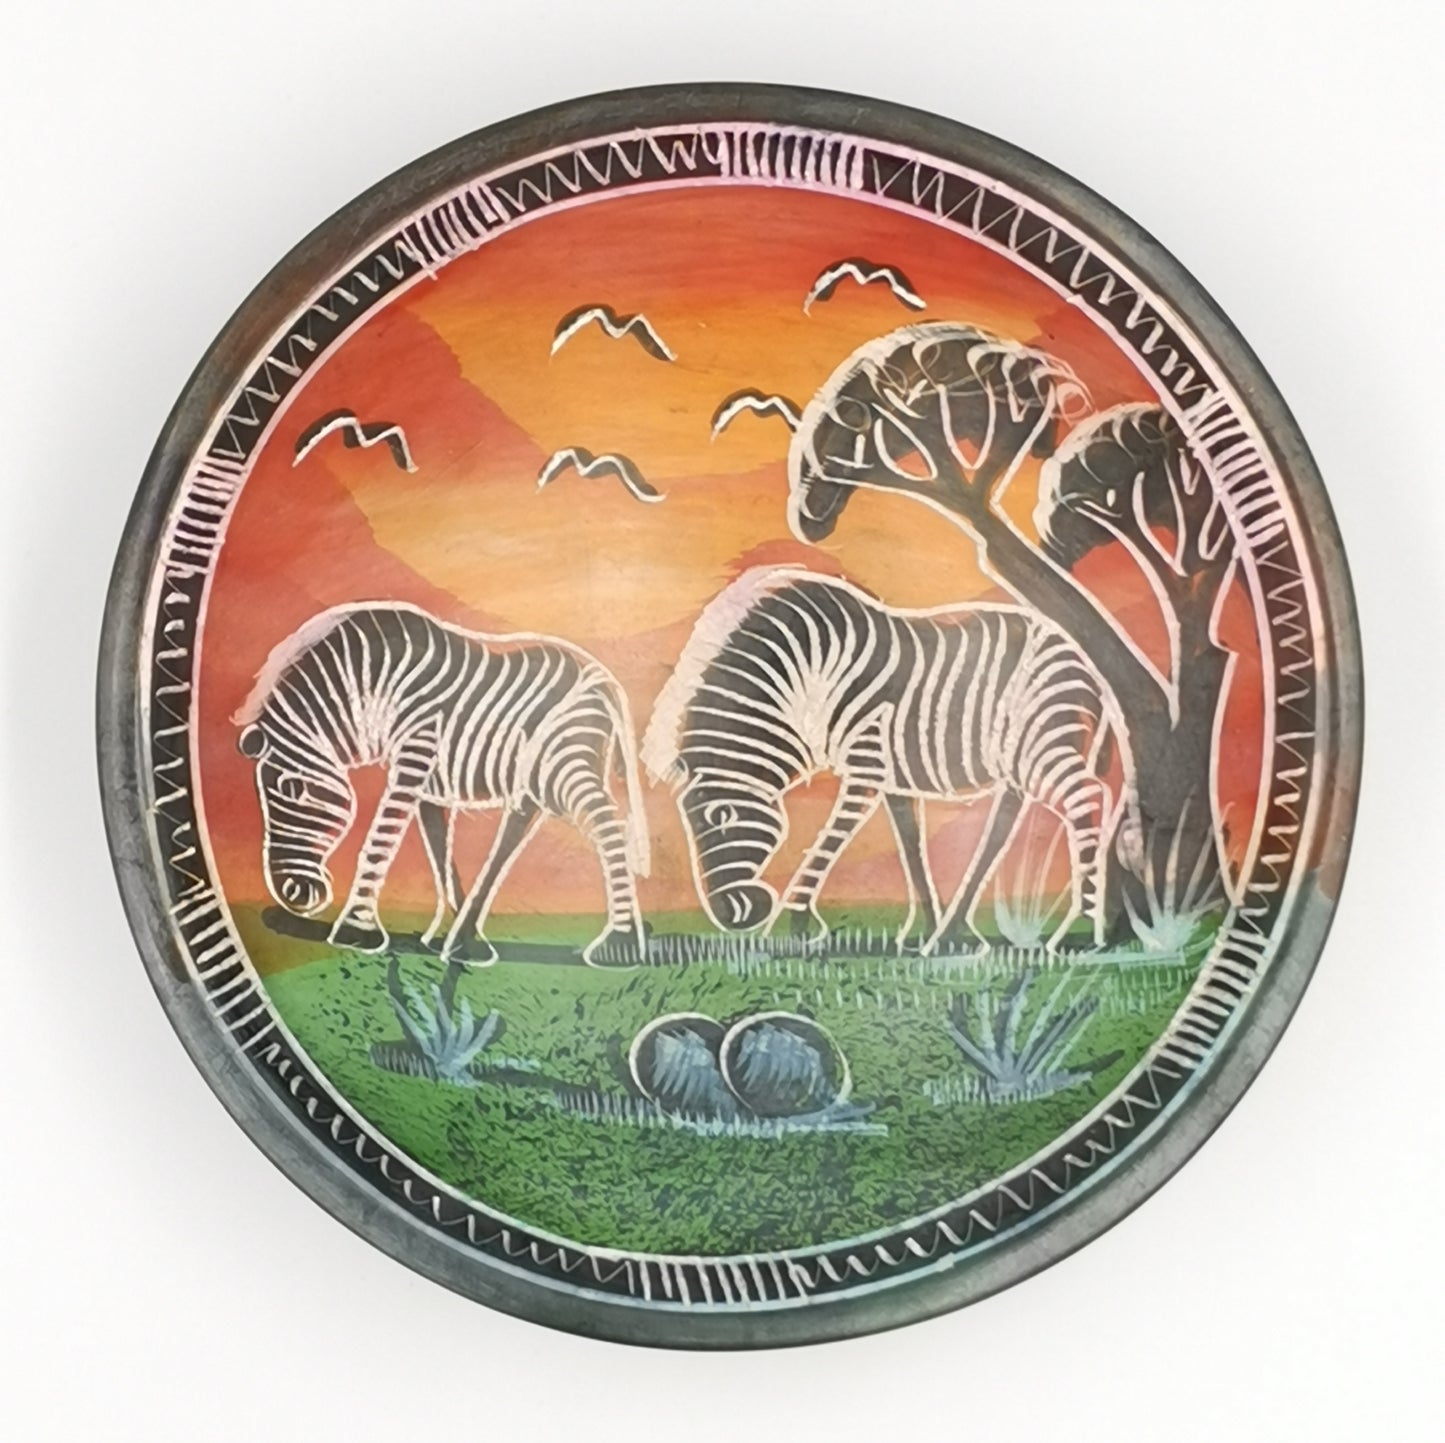 Zebra Soapstone Bowl - Medium